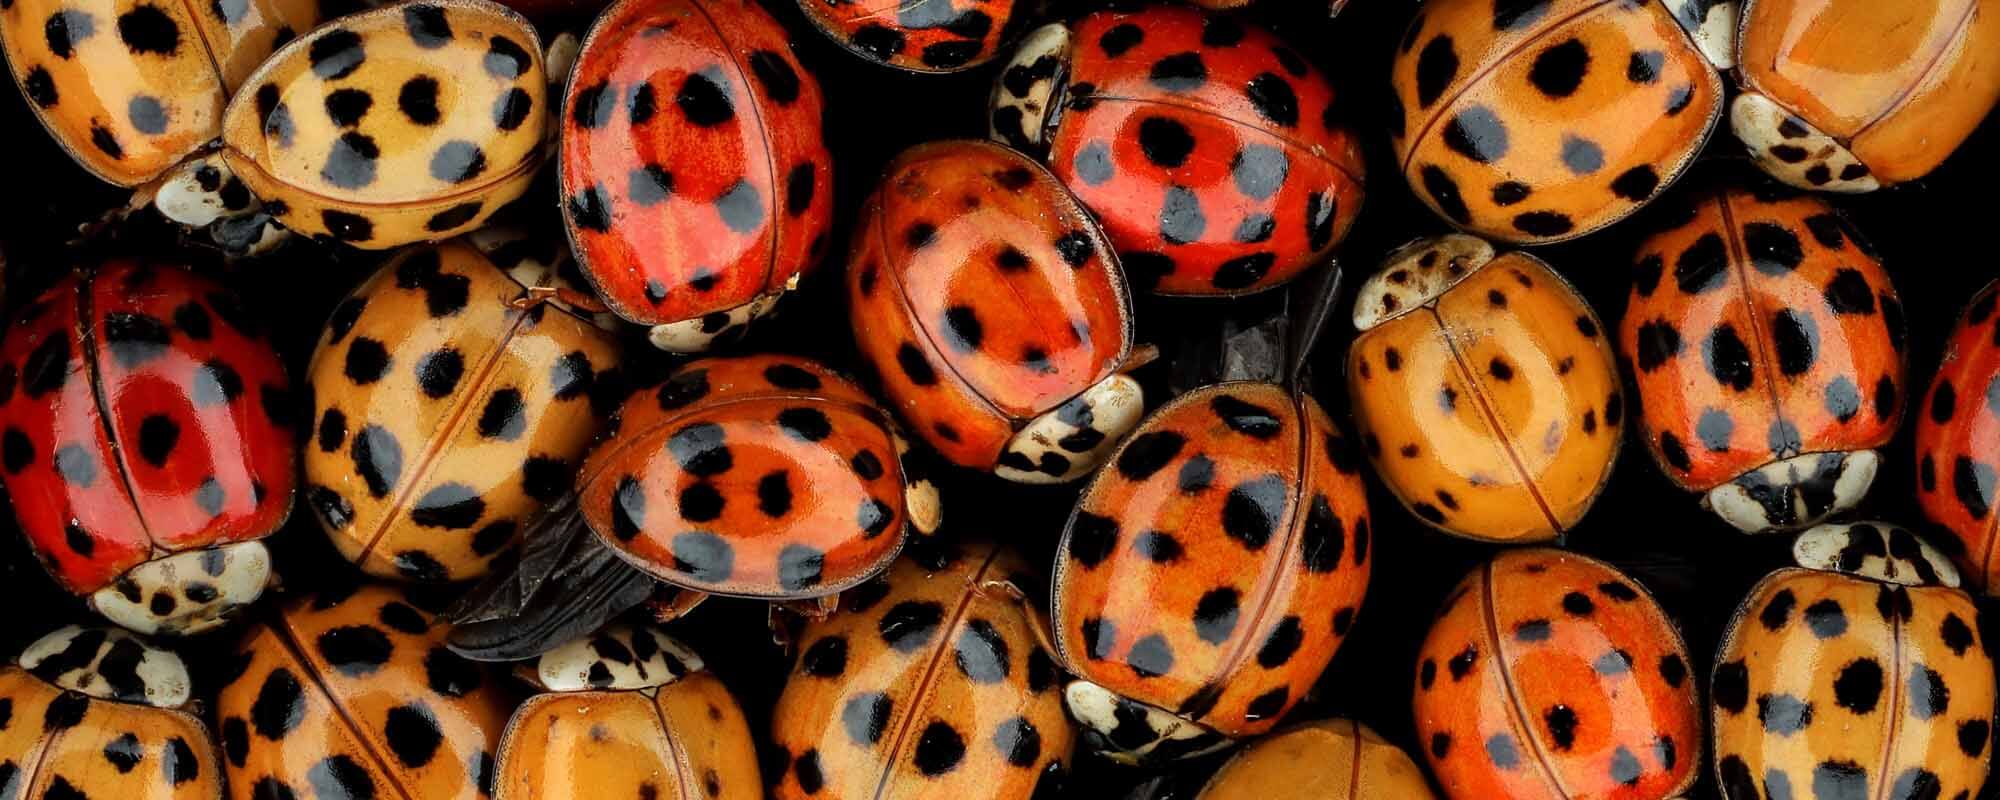 Ladybug Invasion